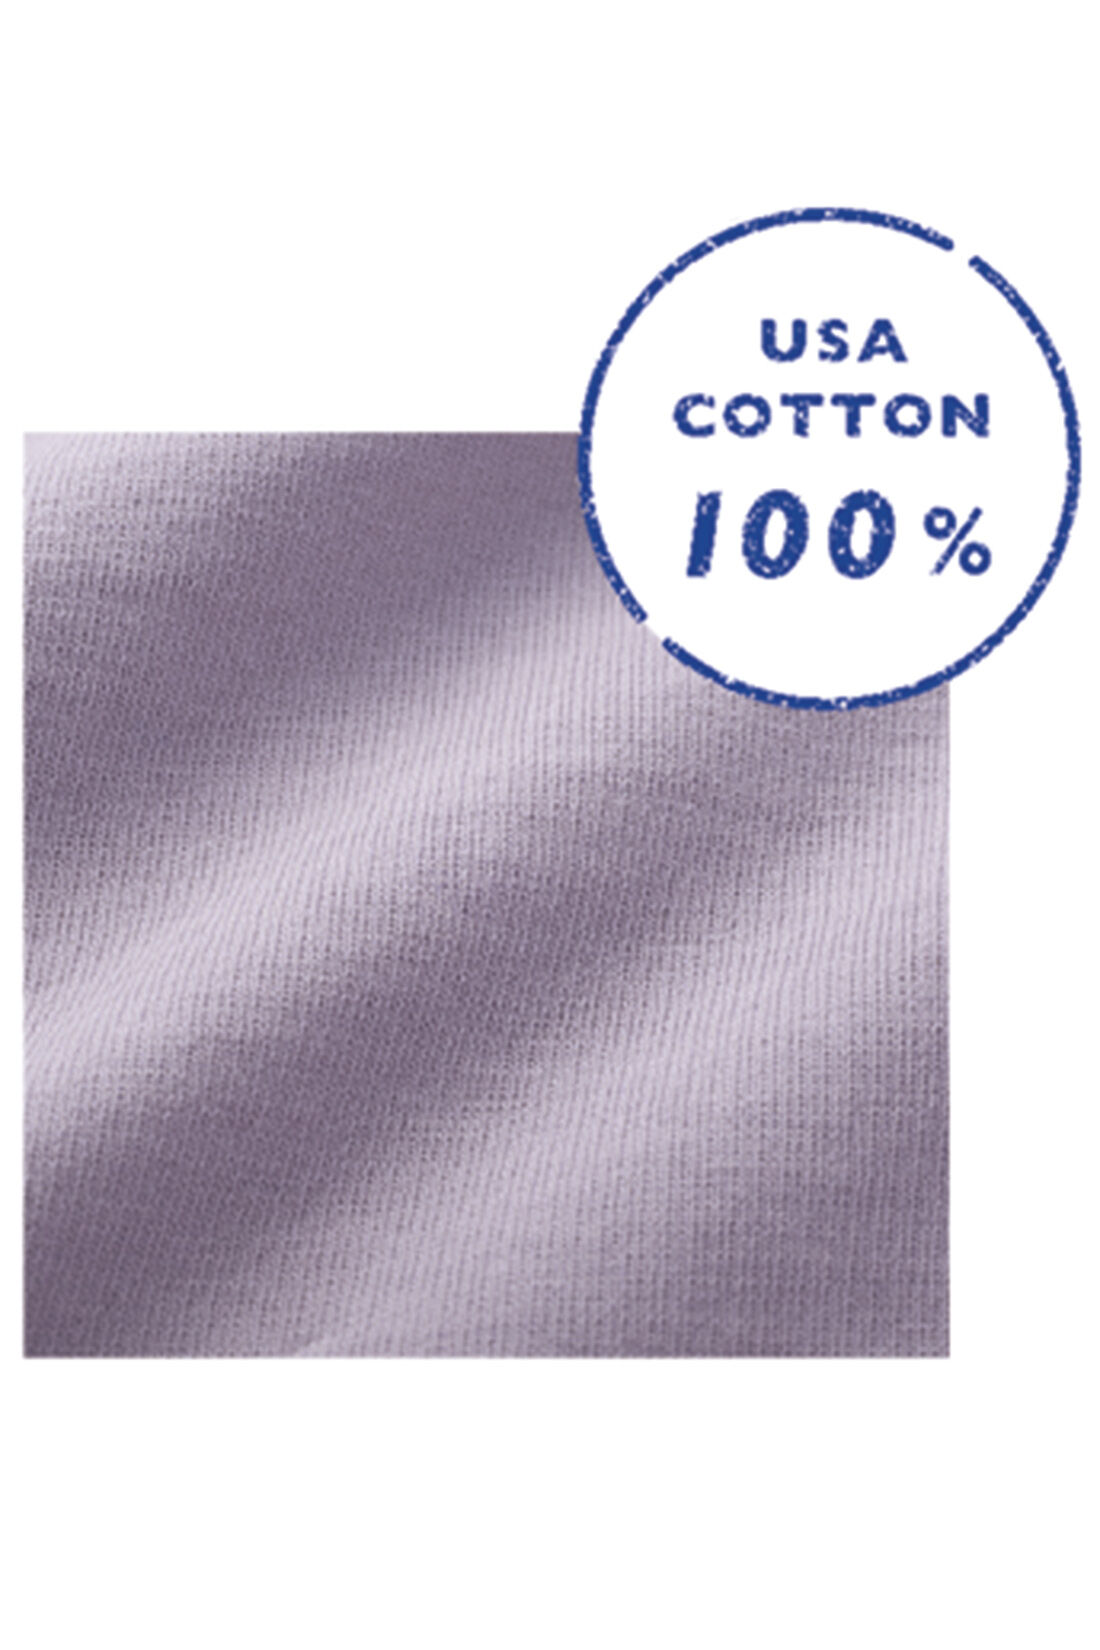 Live in  comfort|リブ イン コンフォート　USAコットン100% ざばっと着るだけらくちん半袖ワンピース〈ブラック〉|USAコットンの天じく素材。張り感があってからだのラインを拾わず、きれいな表面感。